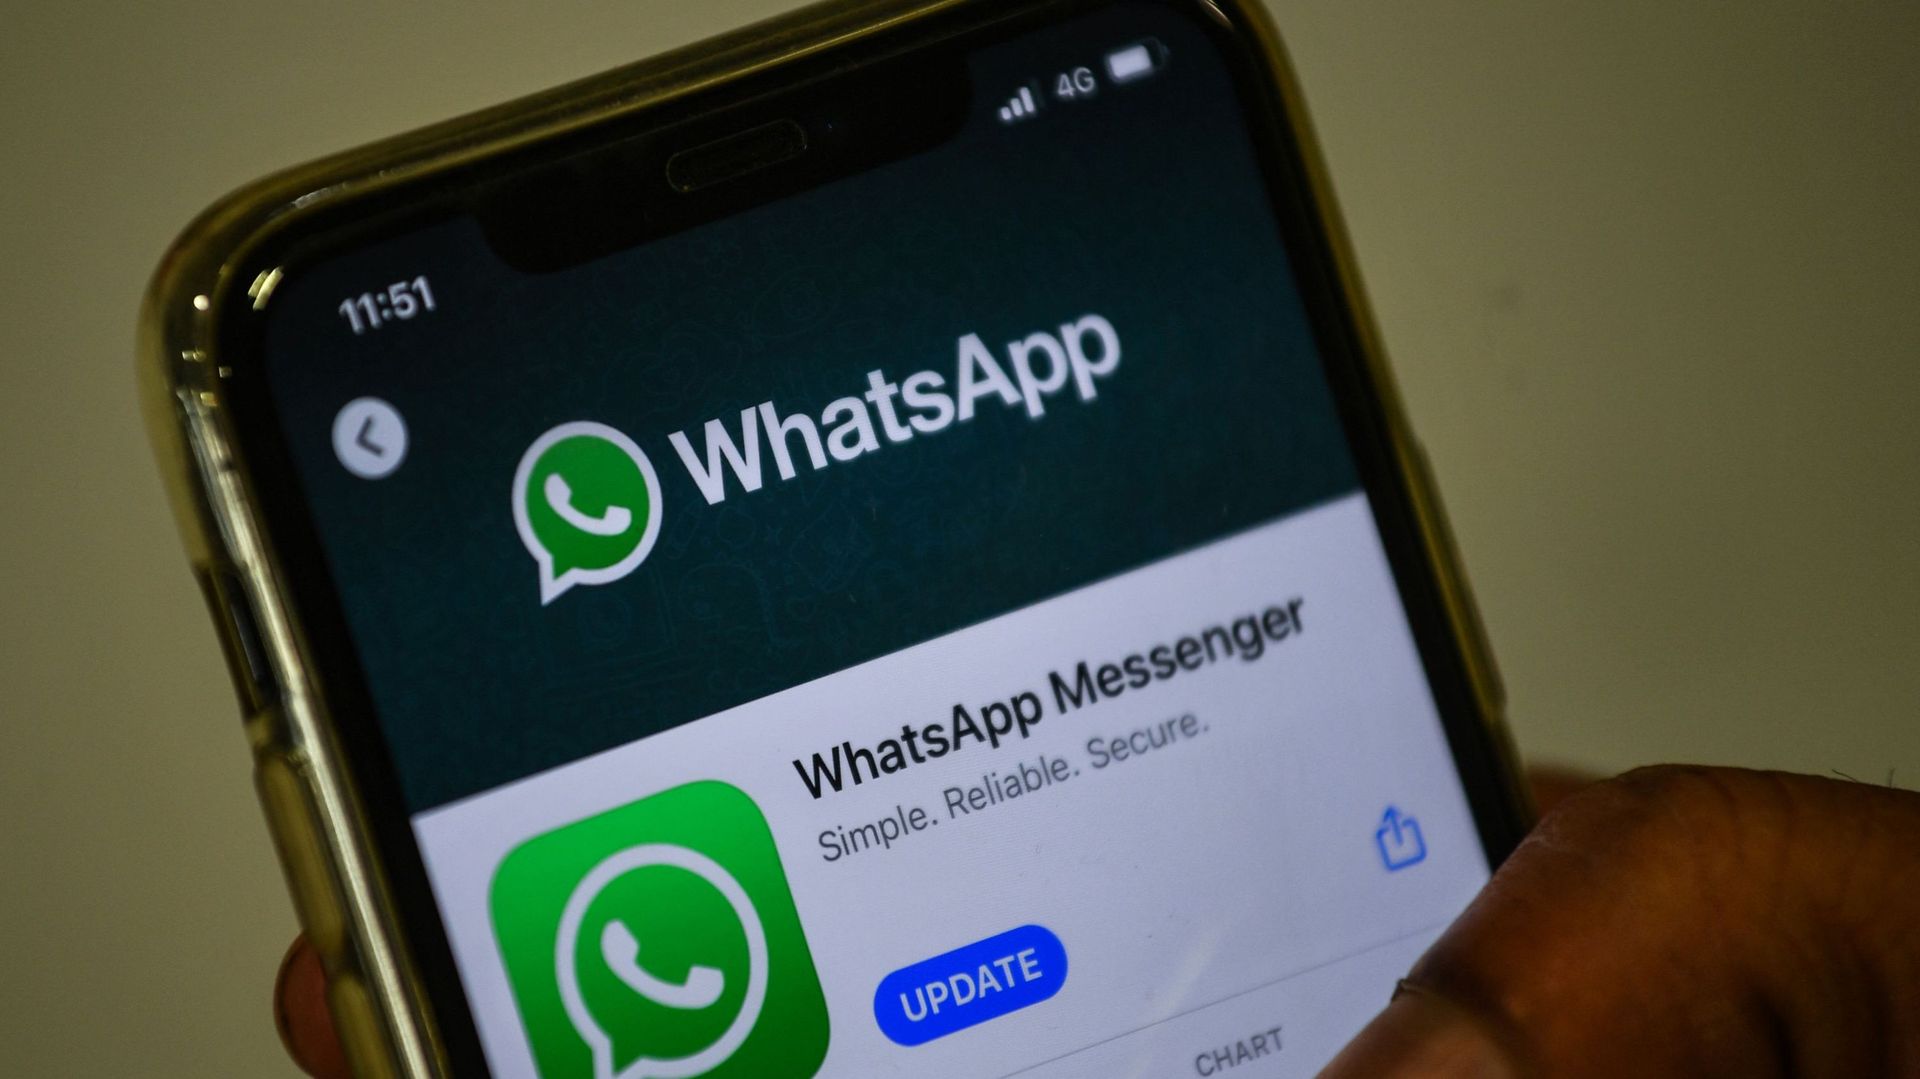 Dans certains pays, comme l'Inde, WhatsApp a eu une responsabilité indirecte sur des événements dramatiques.